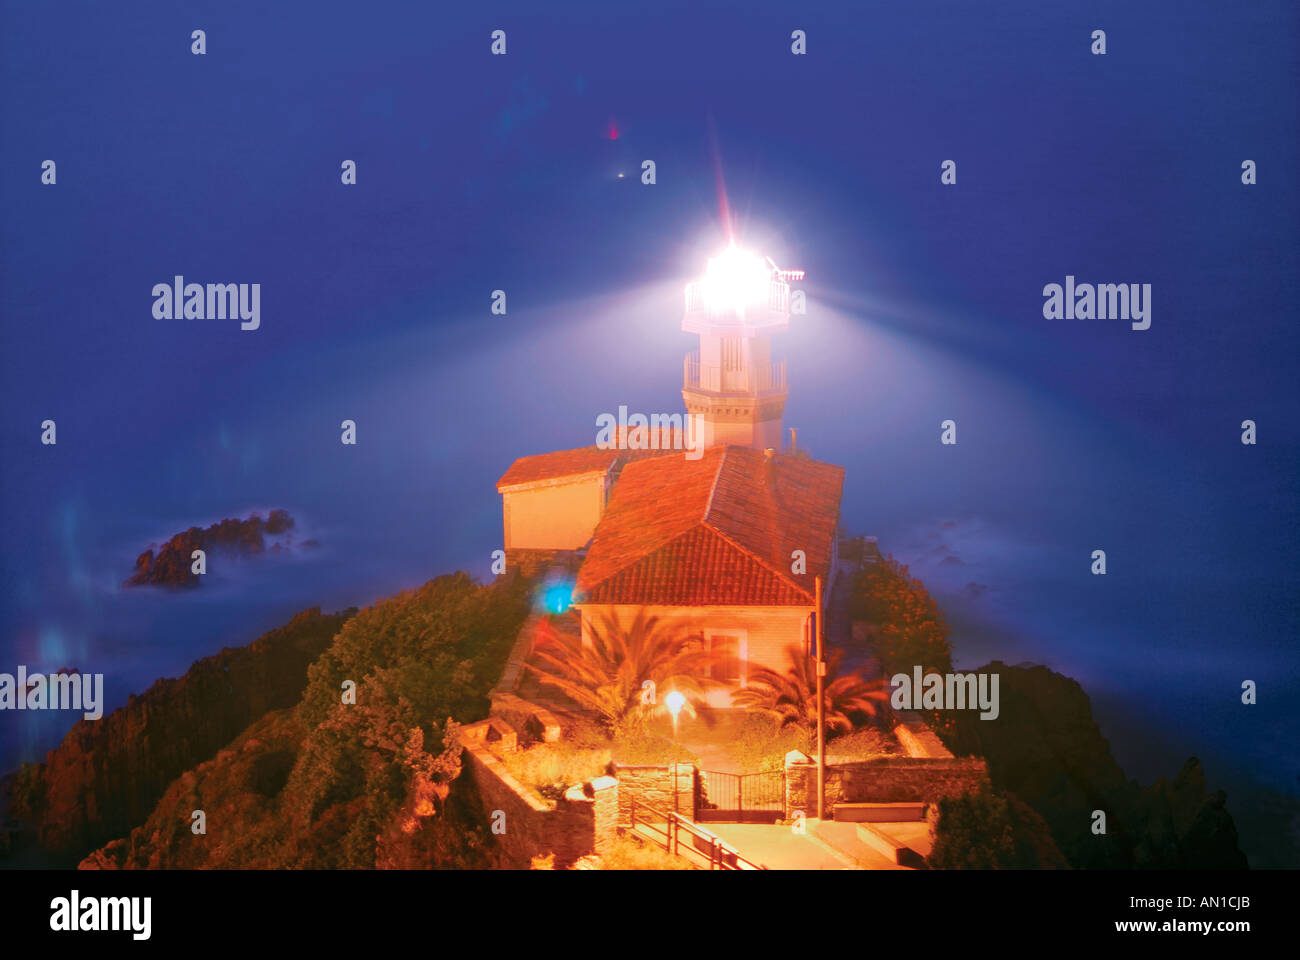 Lighthouse of Cudillero by night, Cudillero, Asturias, Spain Stock Photo